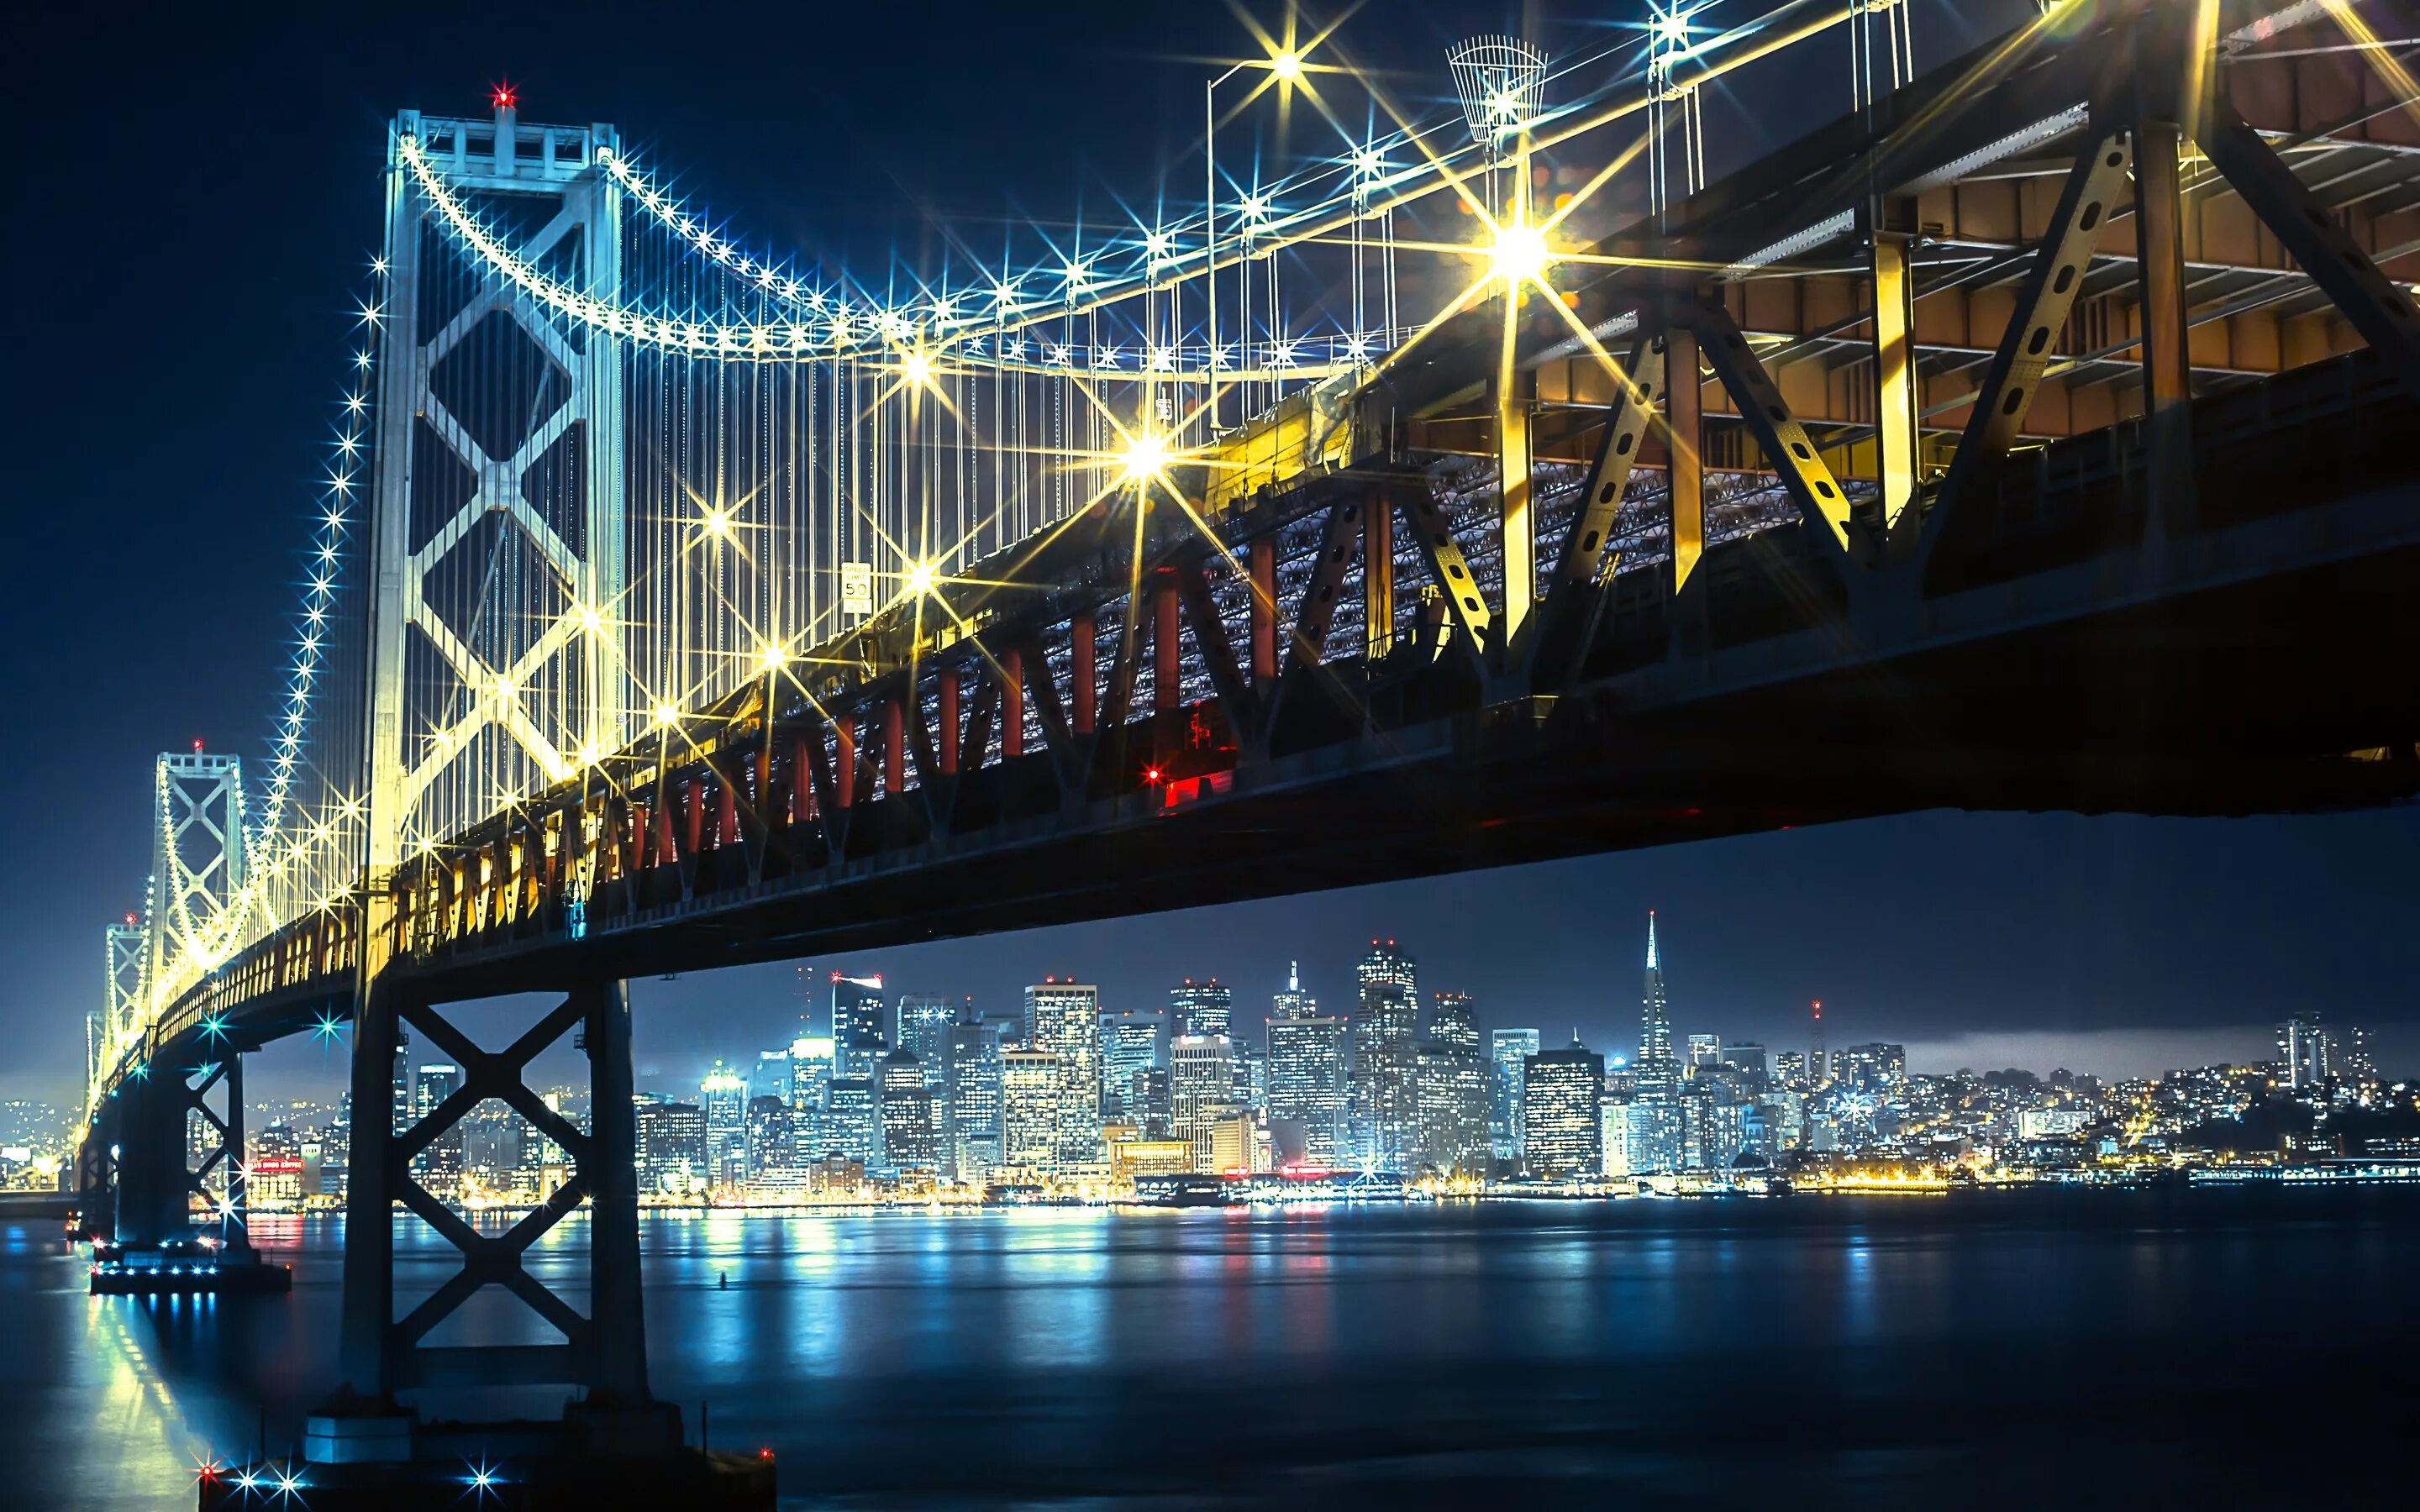 Сделать бридж. Бруклинский мост Сан Франциско. Бруклинский мост Нью-Йорк. Мост Сан Франциско Окленд ночной. Фотообои Сан Франциско ночной мост.